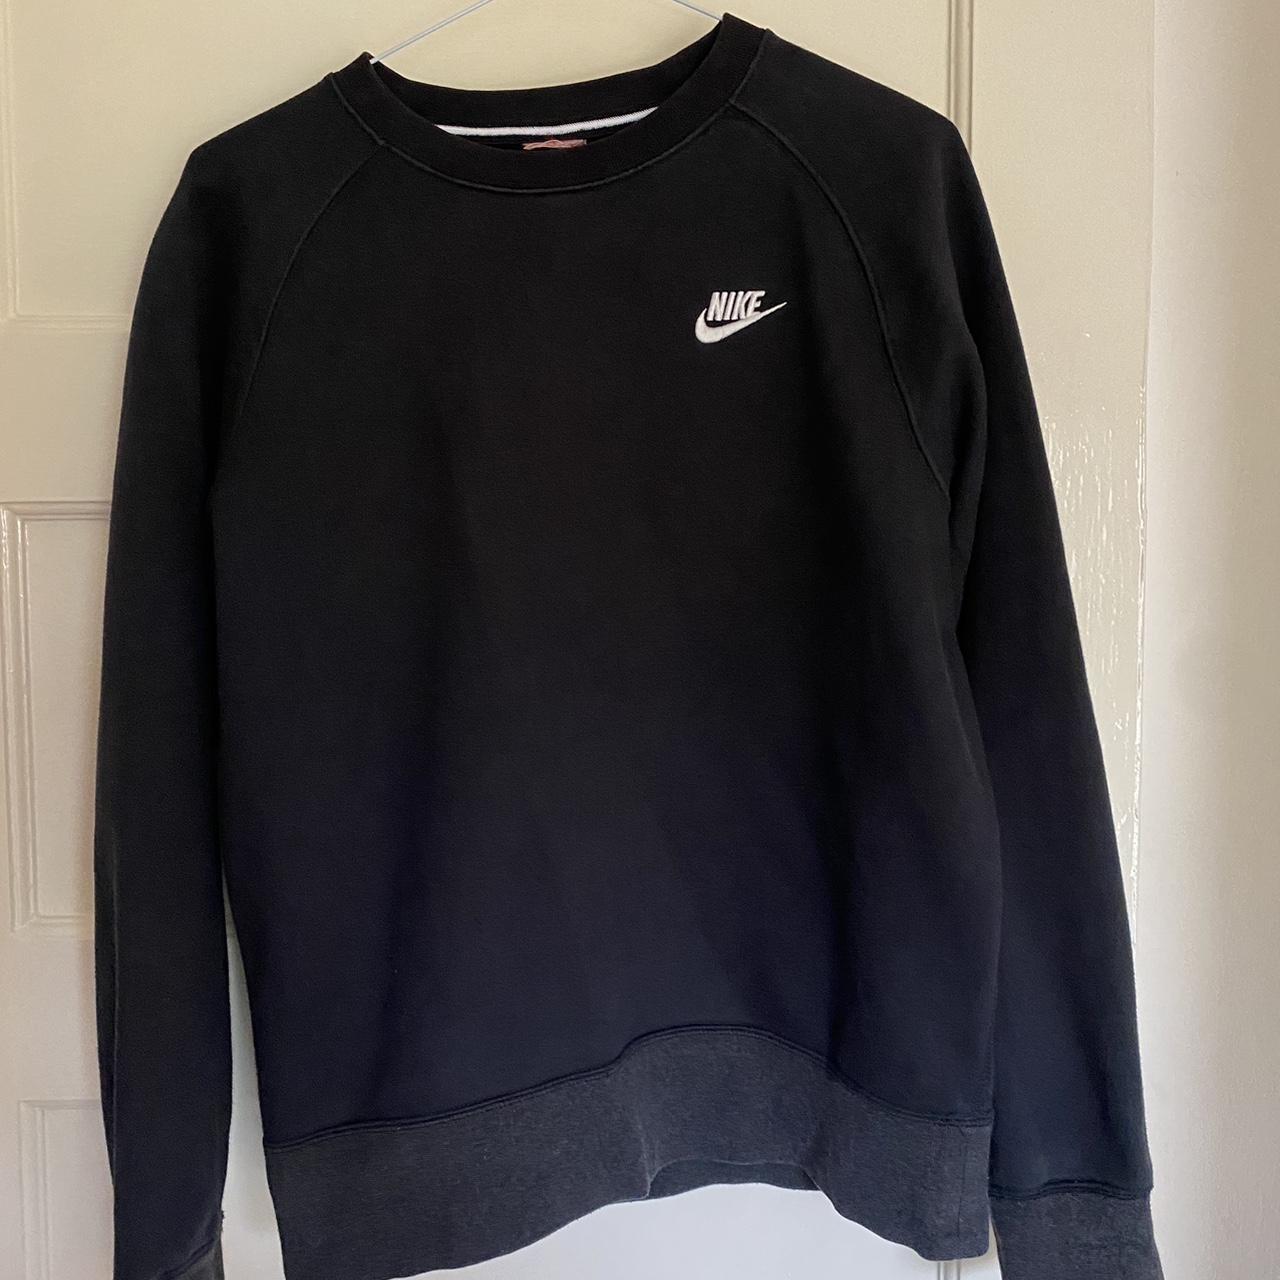 Nike Women's Black Sweatshirt | Depop